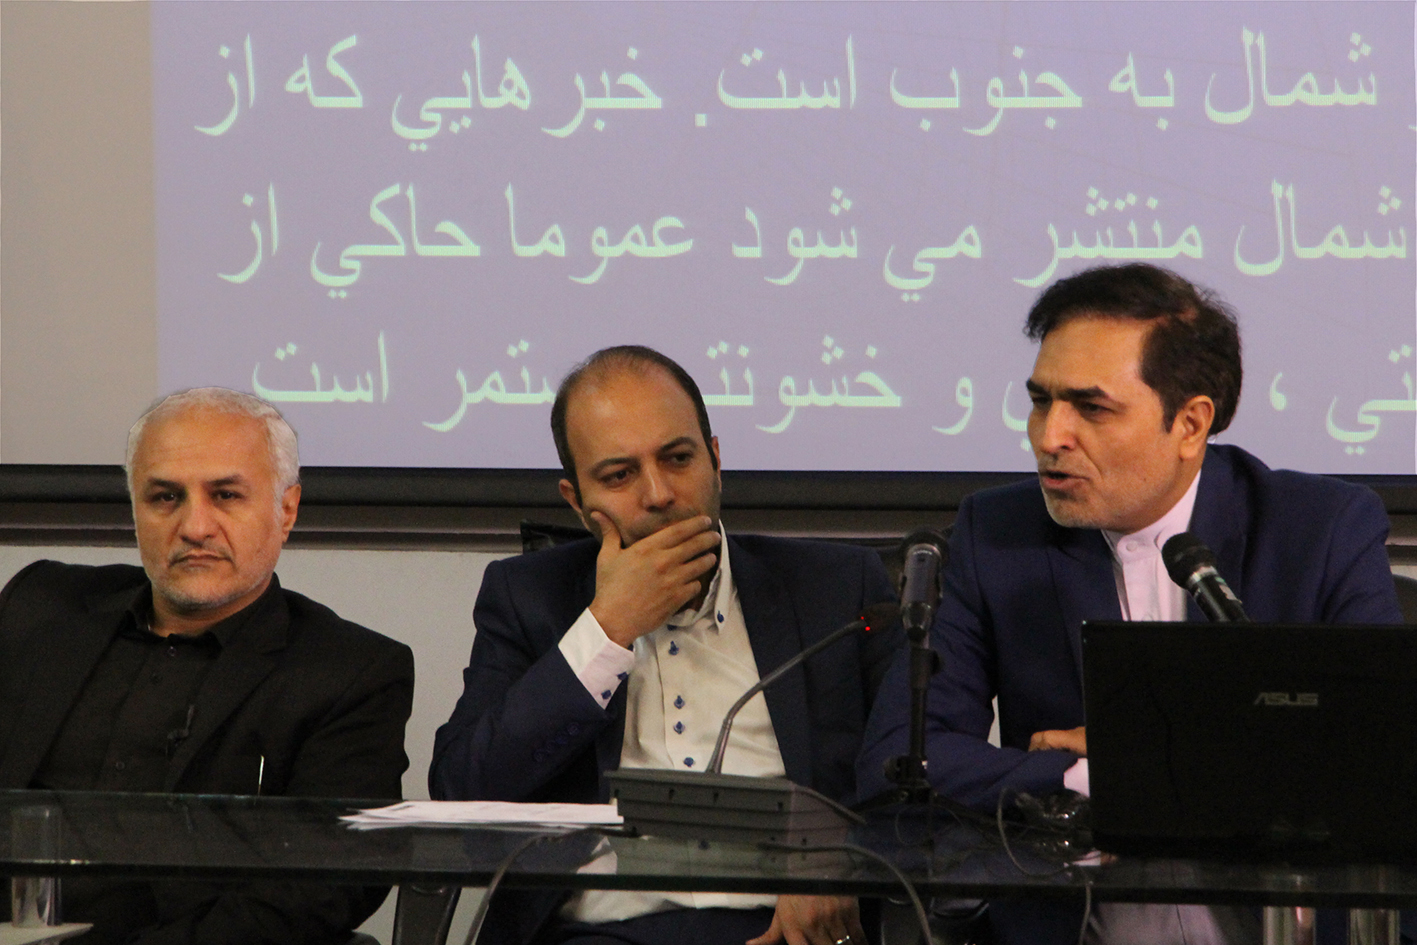 سخنرانی استاد حسن عباسی در دانشگاه صداوسیما - نشست تخصصی رسانه و تروریسم